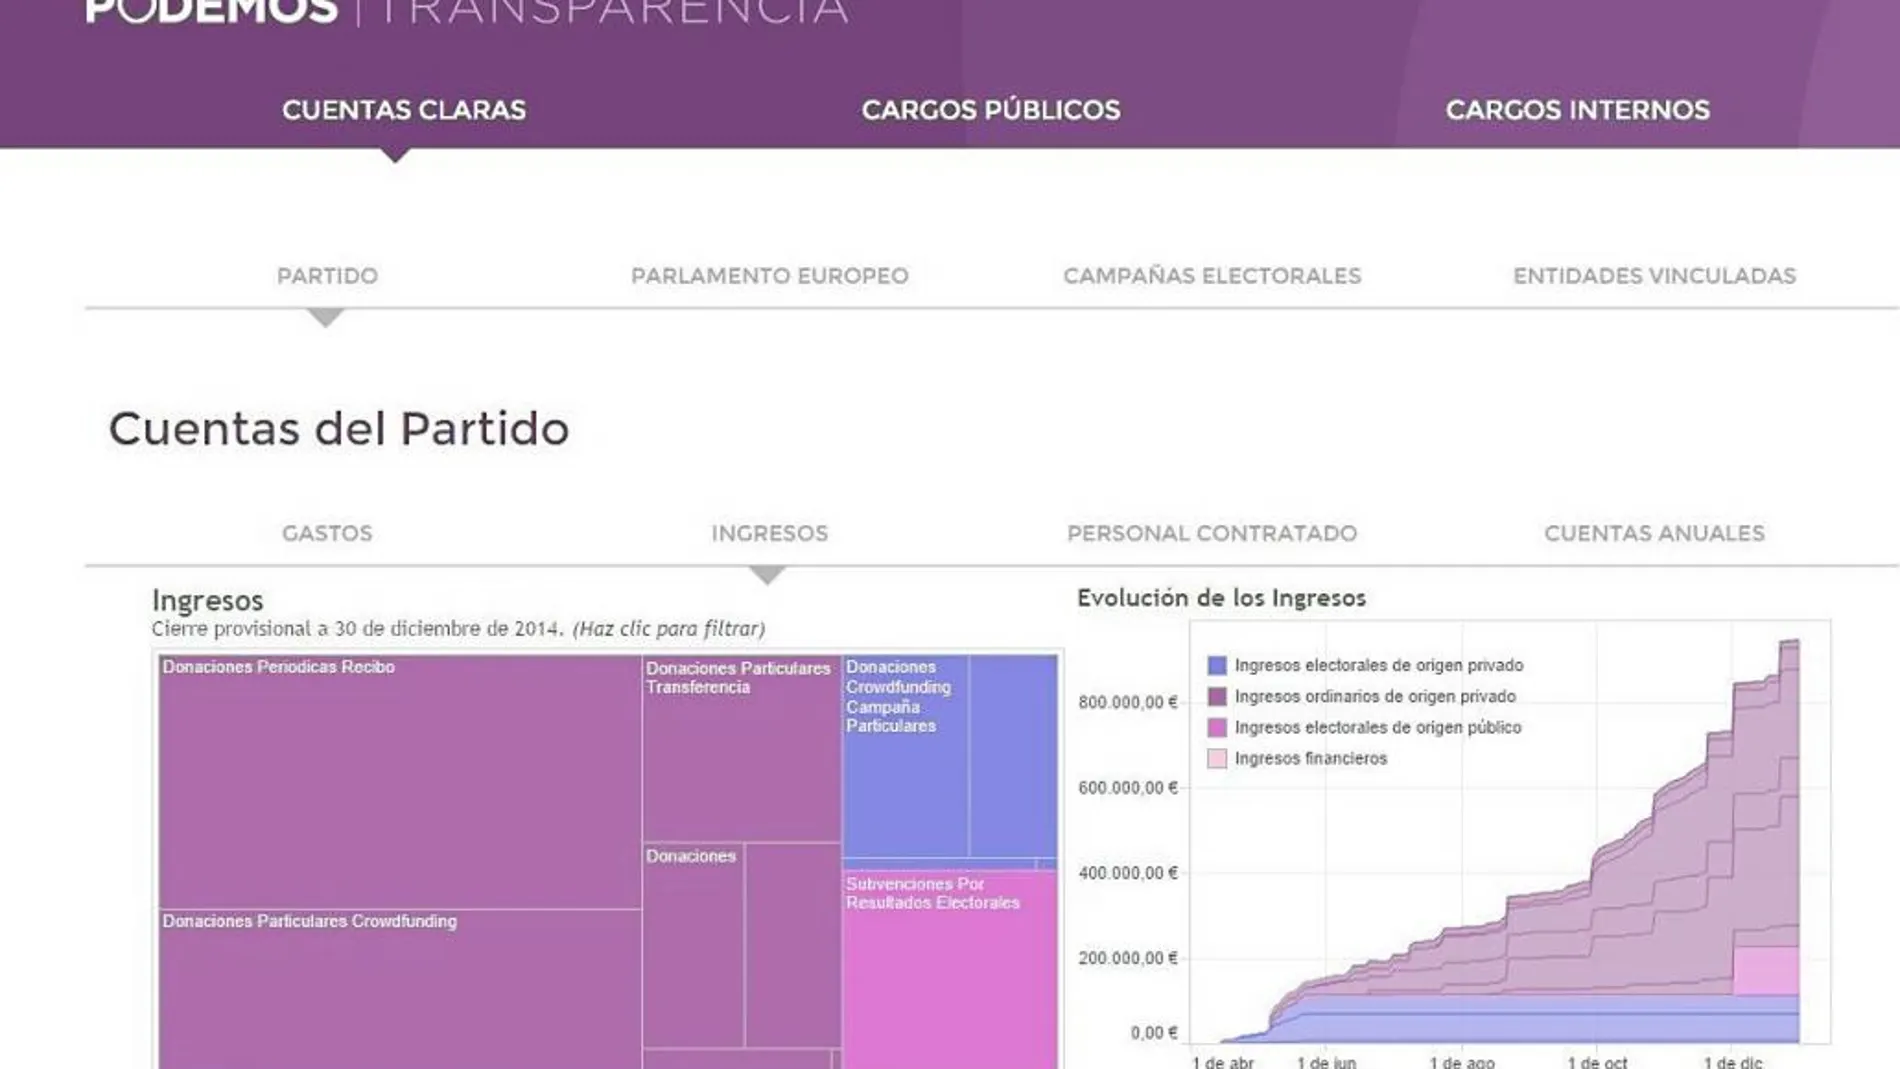 En el portal de Transparencia de Podemos no hay datos desde el 31 de diciembre de 2014.